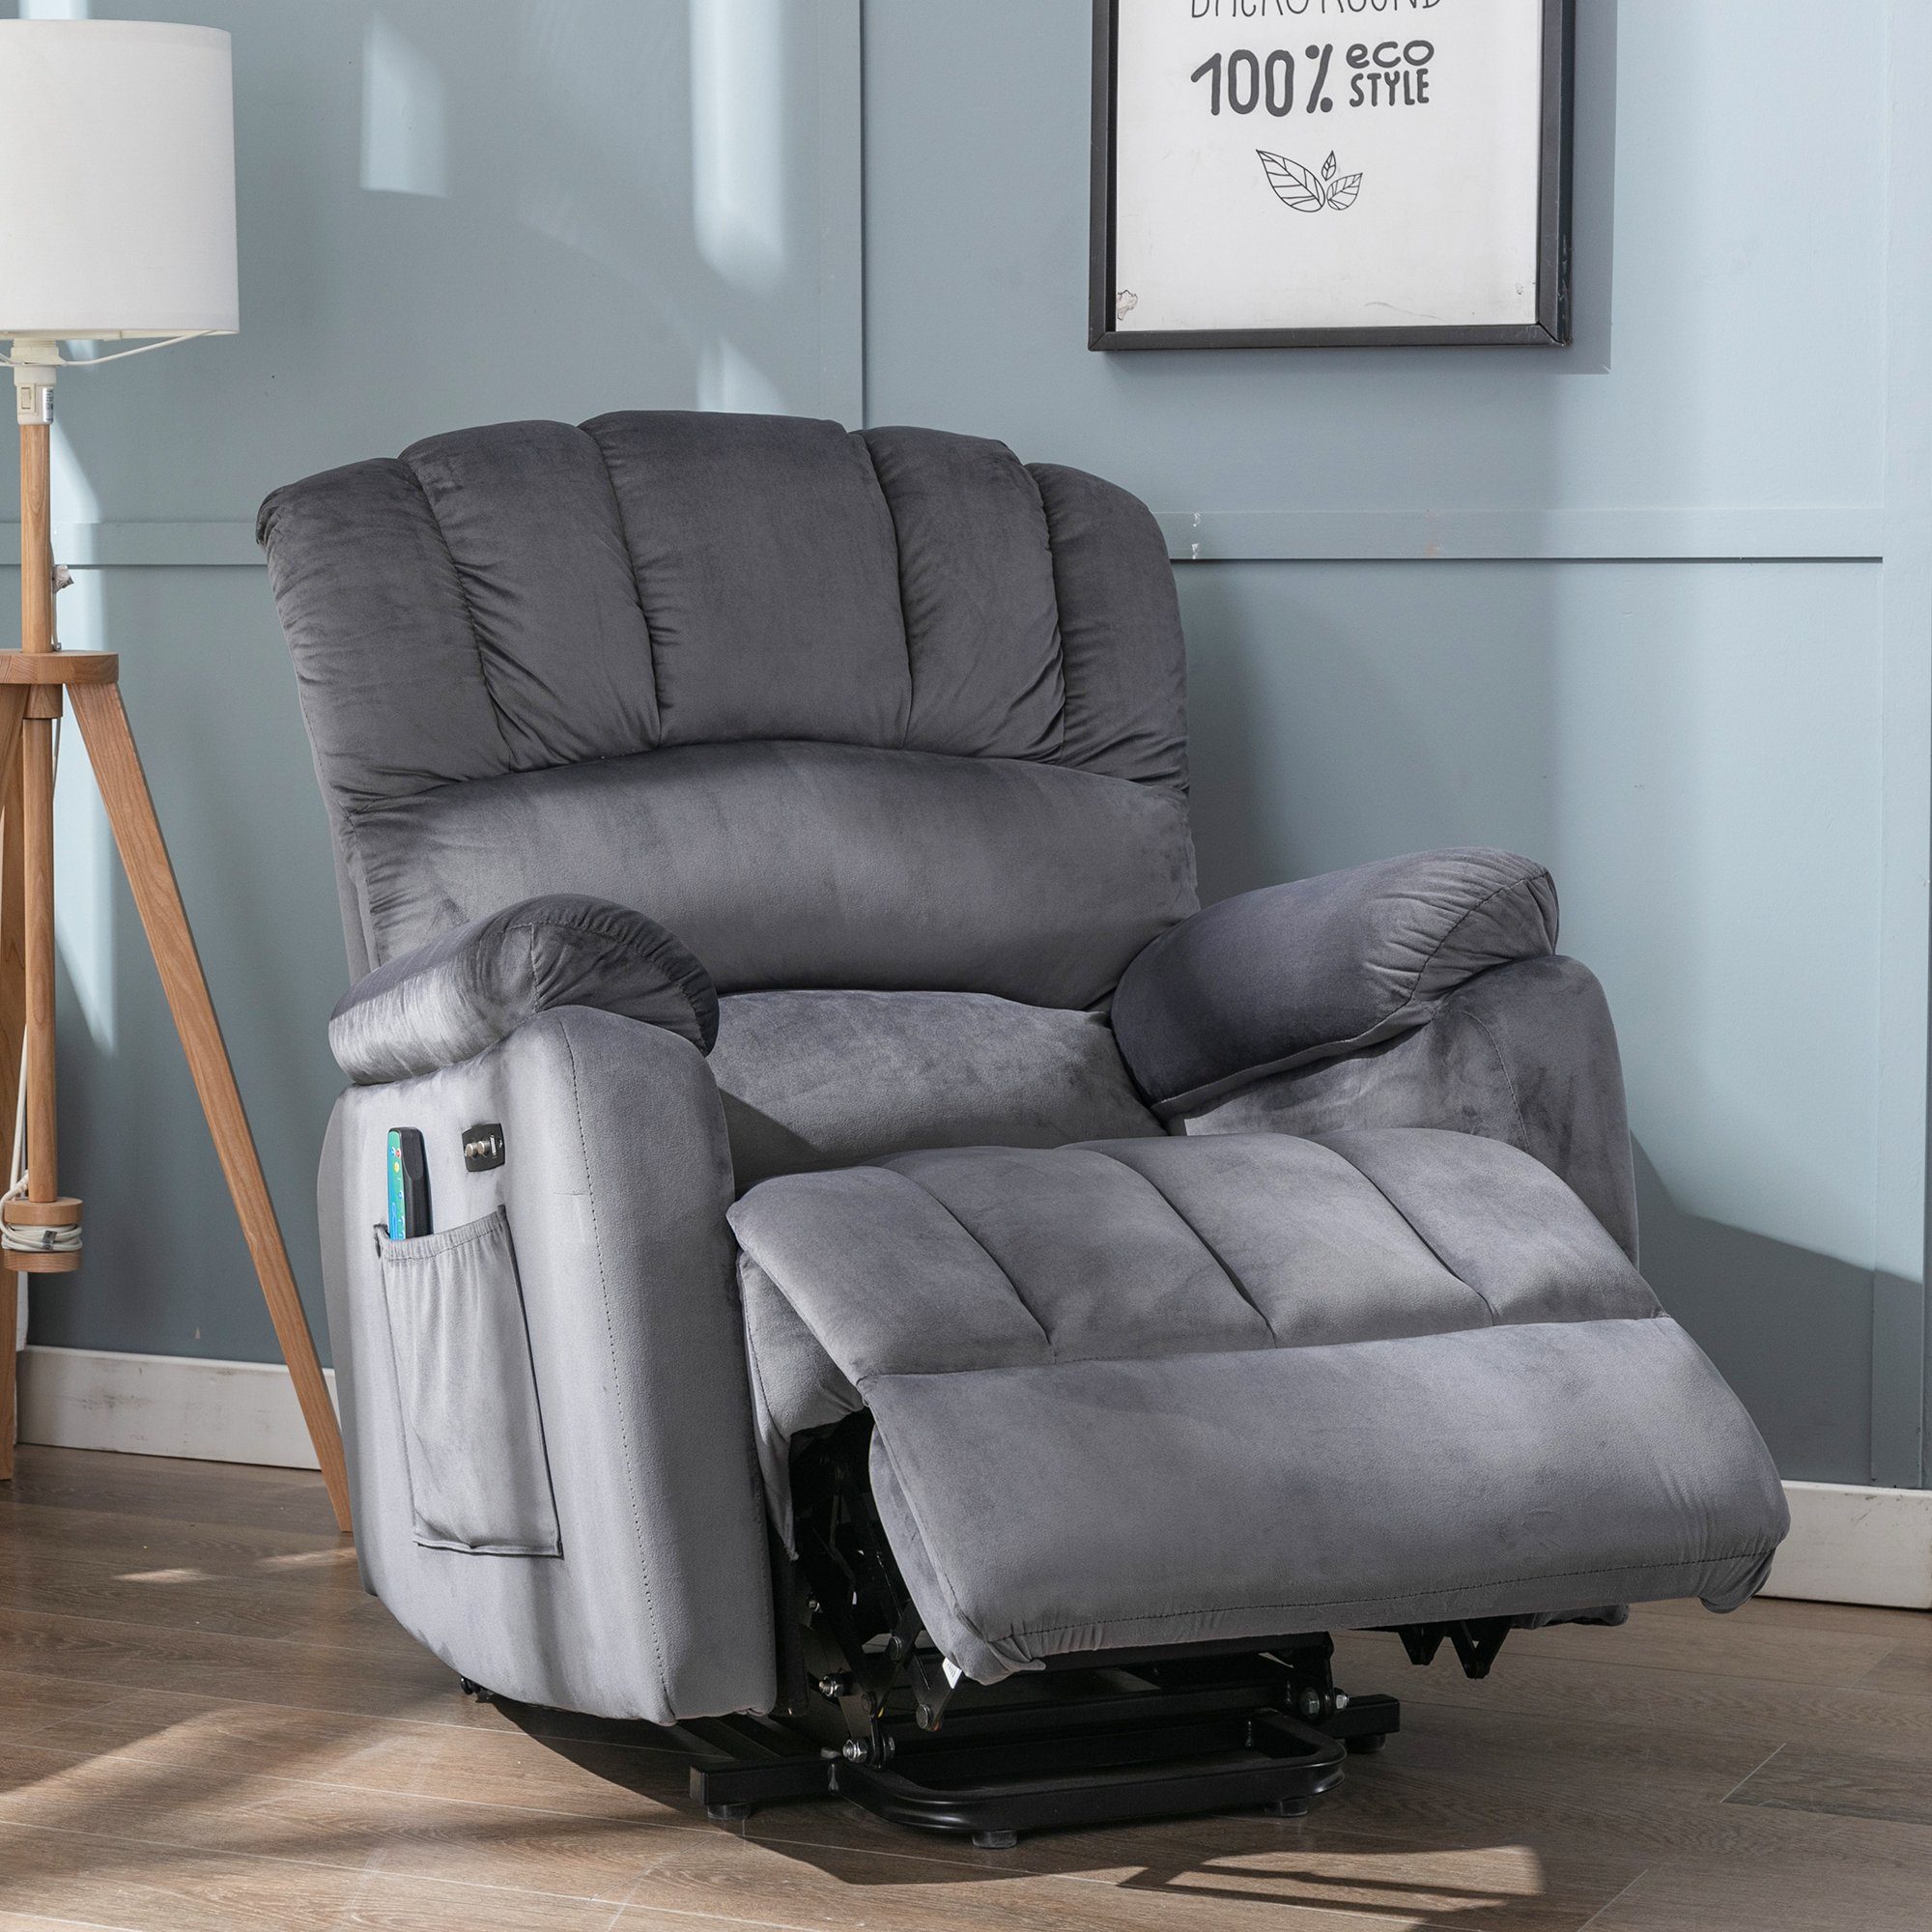 Ulife TV-Sessel Massagesessel Relaxsessel Relaxliege mit Vibration, Aufstehhilfe, USB-Verstellung und Wärmefunktion Grau